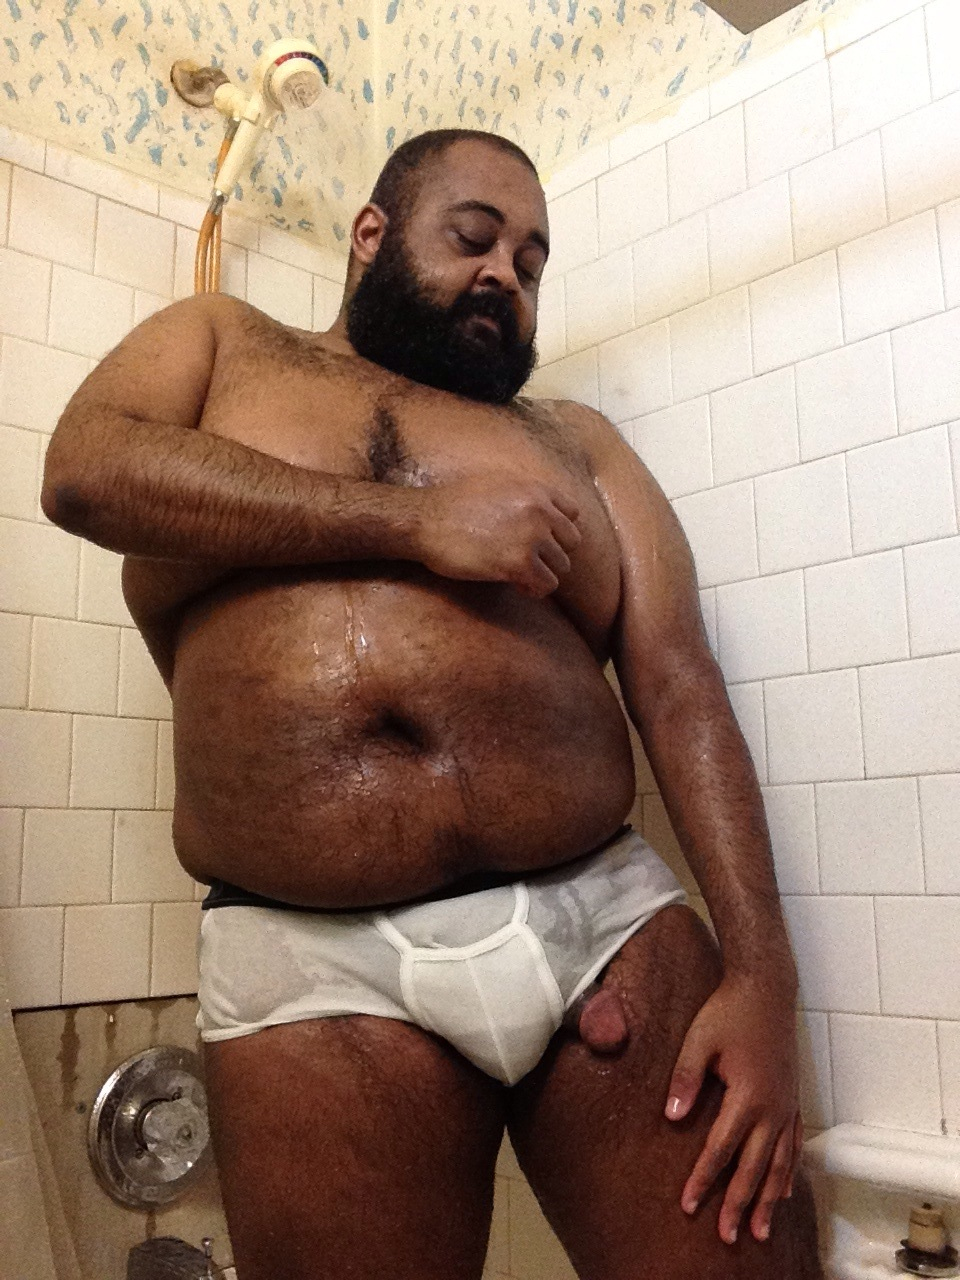 Big Fat Black Guy - Chubby Gay Guy Porn Sites - XXX PHOTO